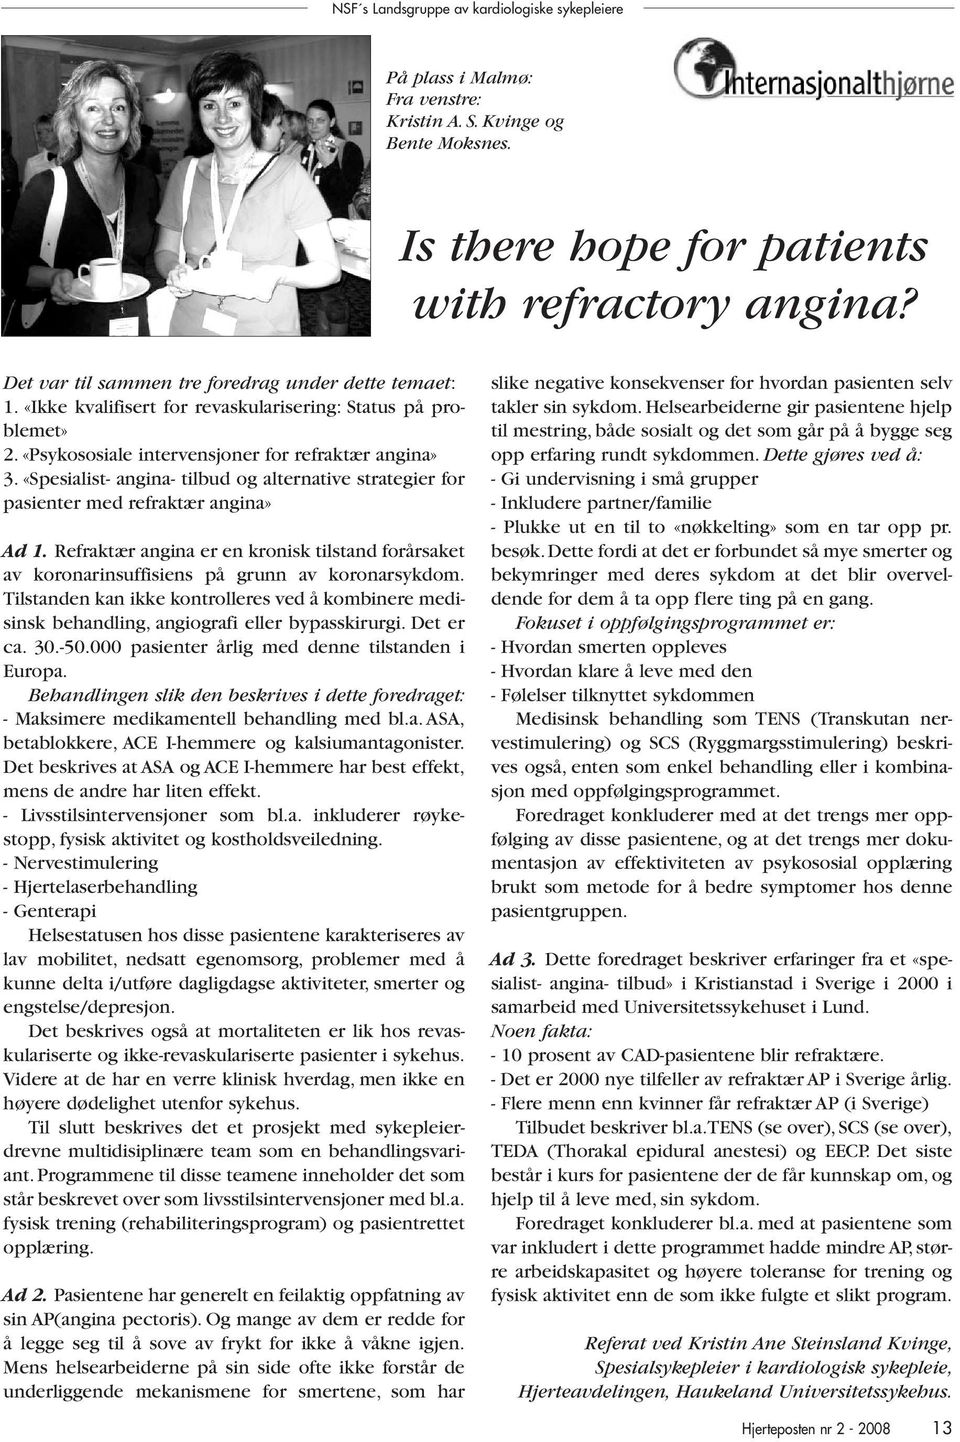 «Spesialist- angina- tilbud og alternative strategier for pasienter med refraktær angina» Ad 1. Refraktær angina er en kronisk tilstand forårsaket av koronarinsuffisiens på grunn av koronarsykdom.